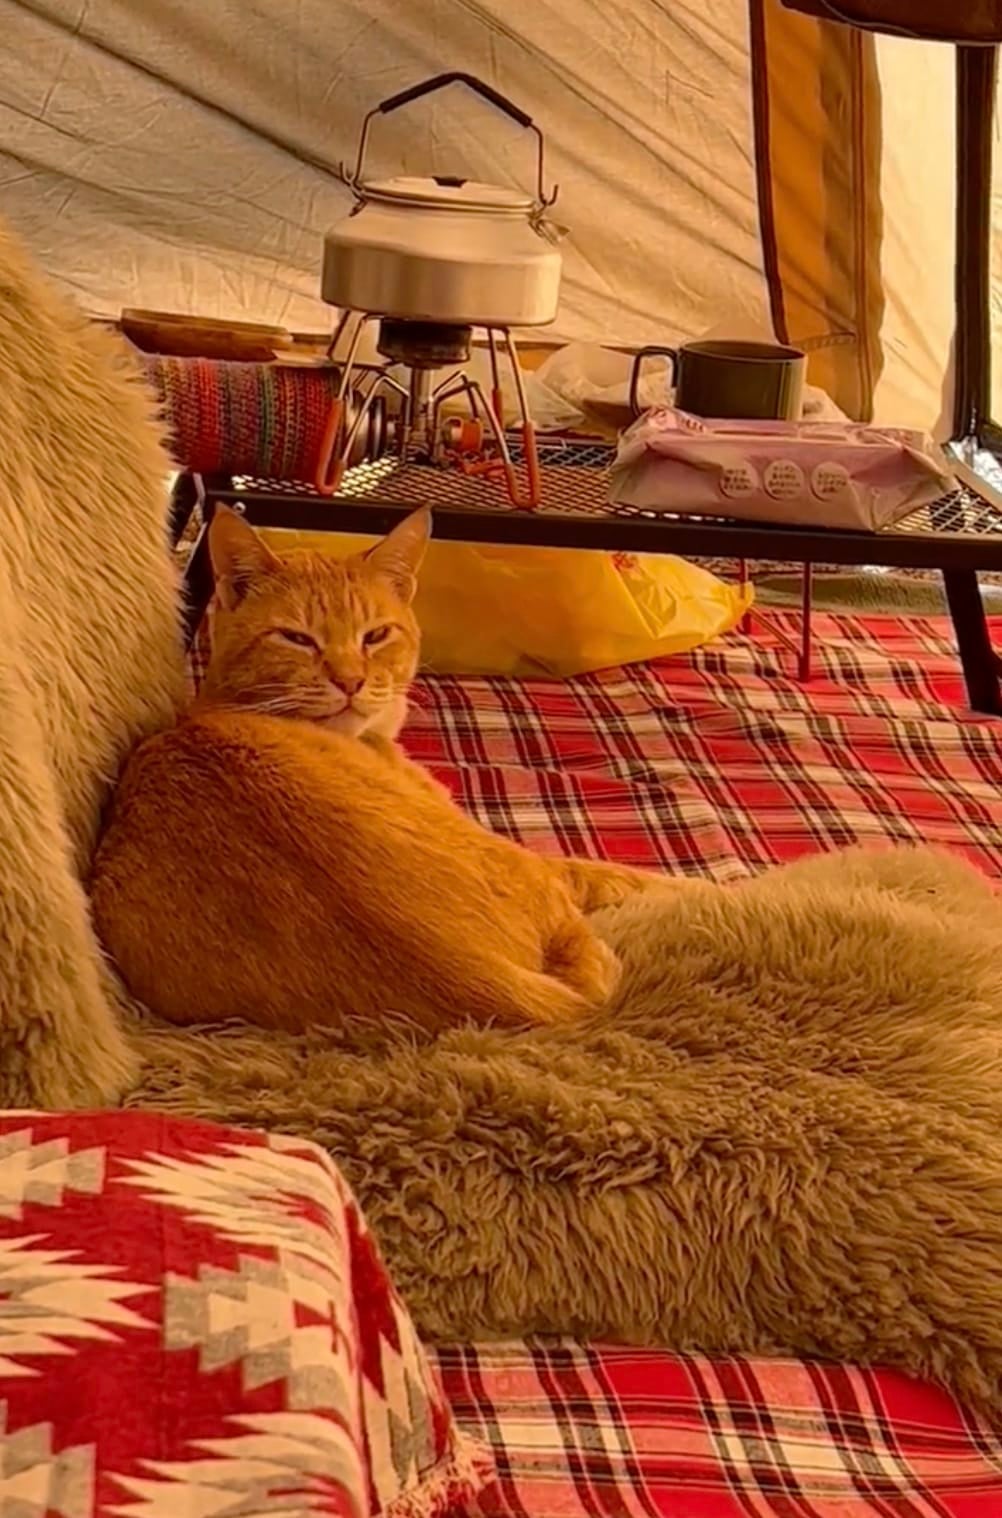 หนุ่มญี่ปุ่นไปตั้งแคมป์ เจอแมวส้มมานอนด้วย